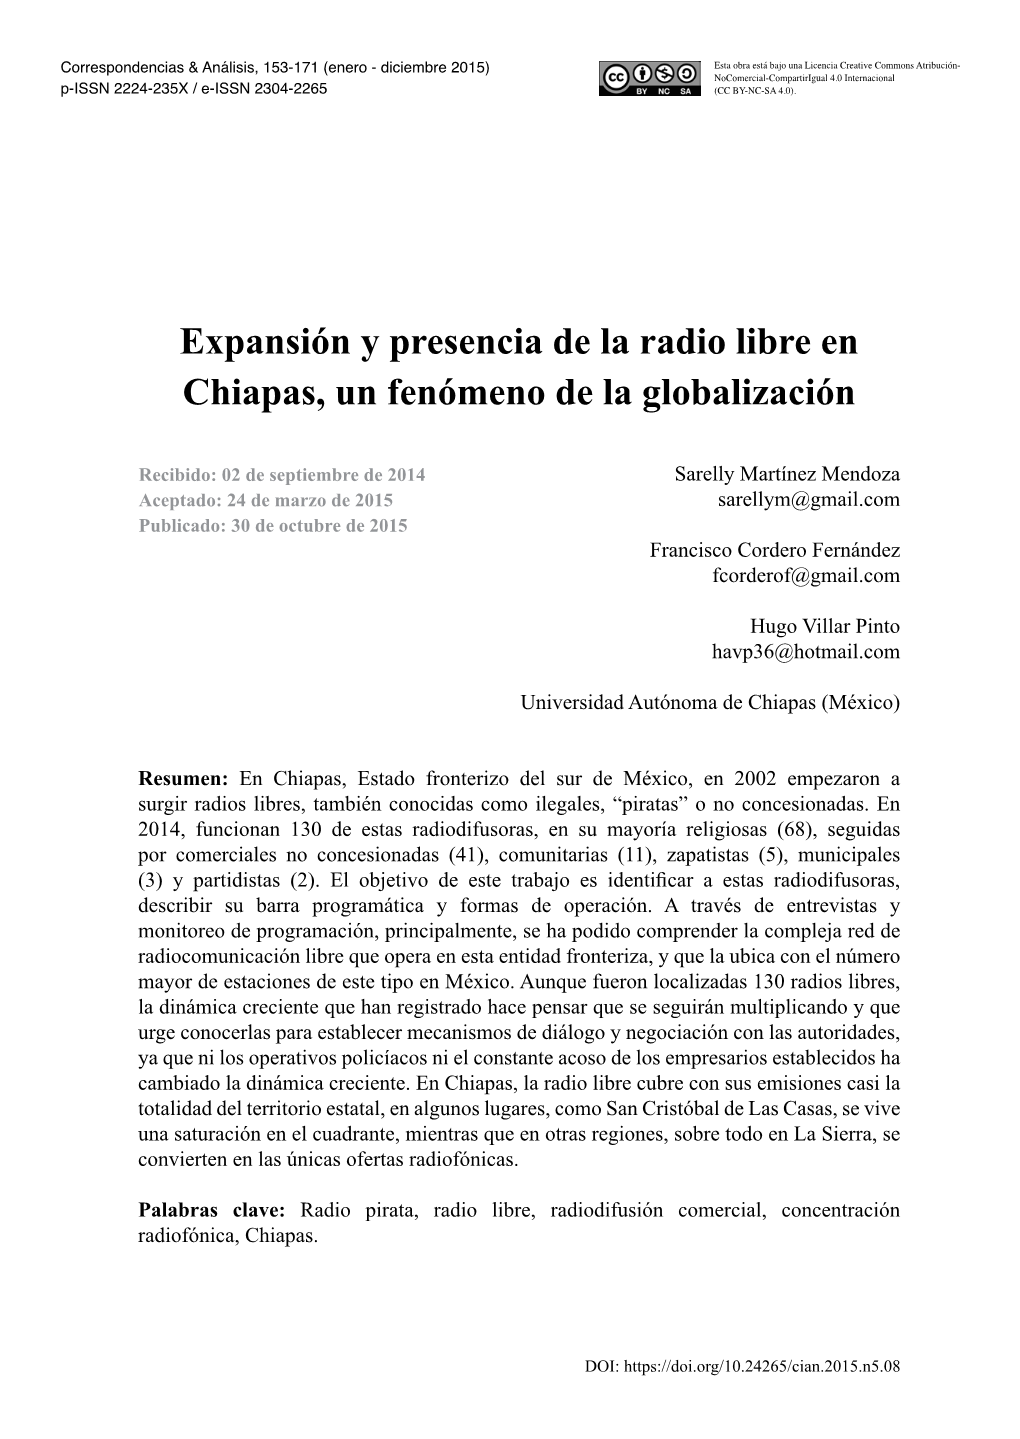 Expansión Y Presencia De La Radio Libre En Chiapas, Un Fenómeno De La Globalización